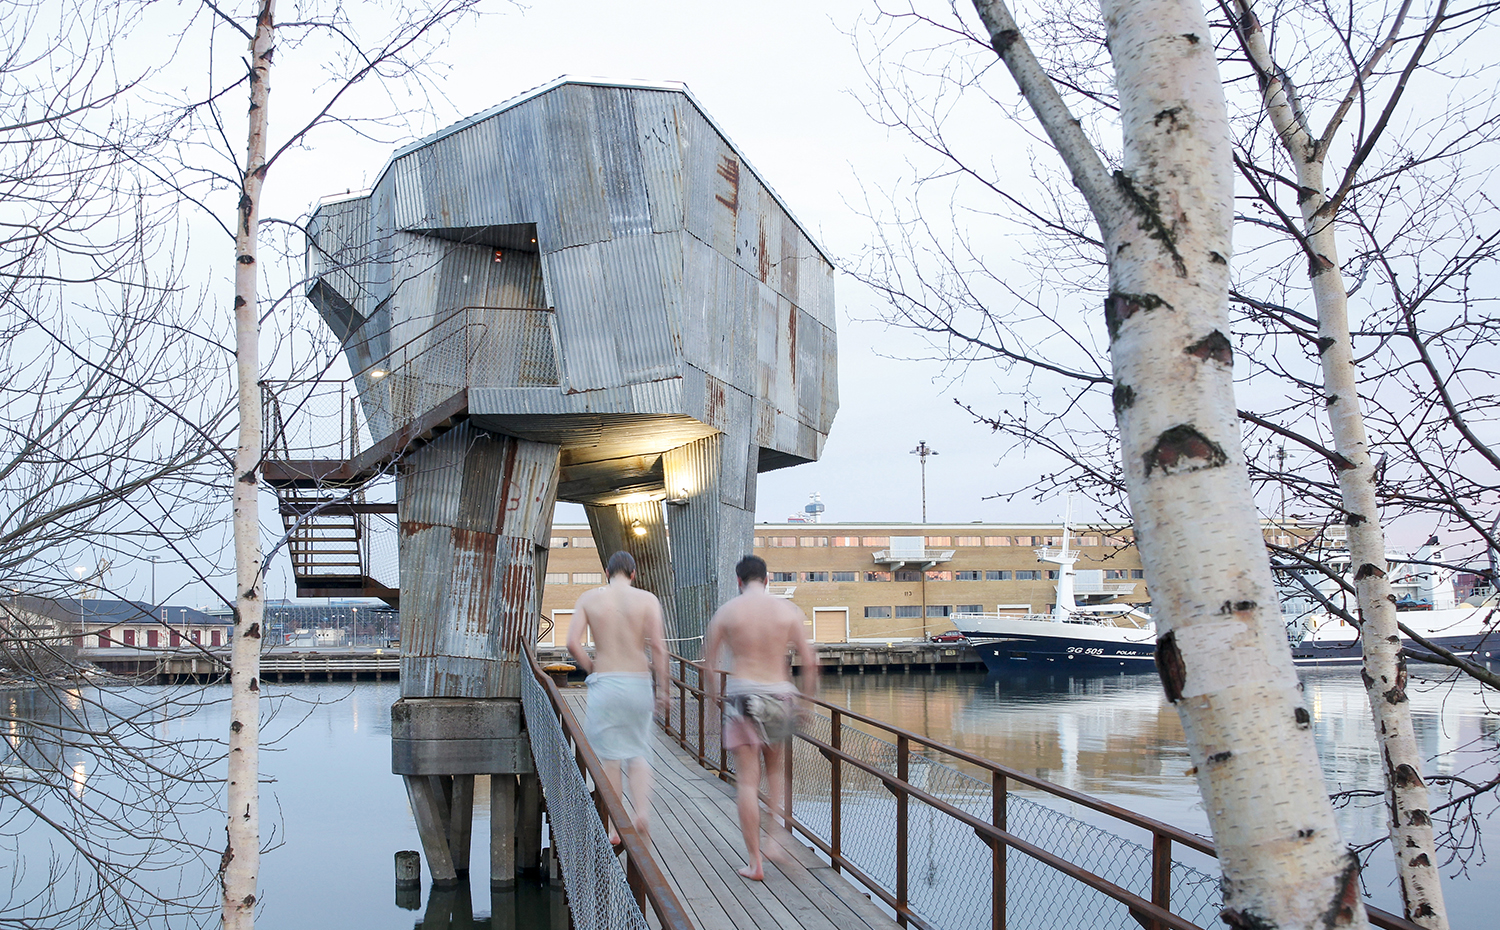 Raumlabor Göteborg bathing culture. Por fuera, la sauna de Gotemburgo está recubierta con planchas metálicas onduladas recicladas, reminiscencia del entorno industrial. Se accede a ella a través de una pasarela de madera